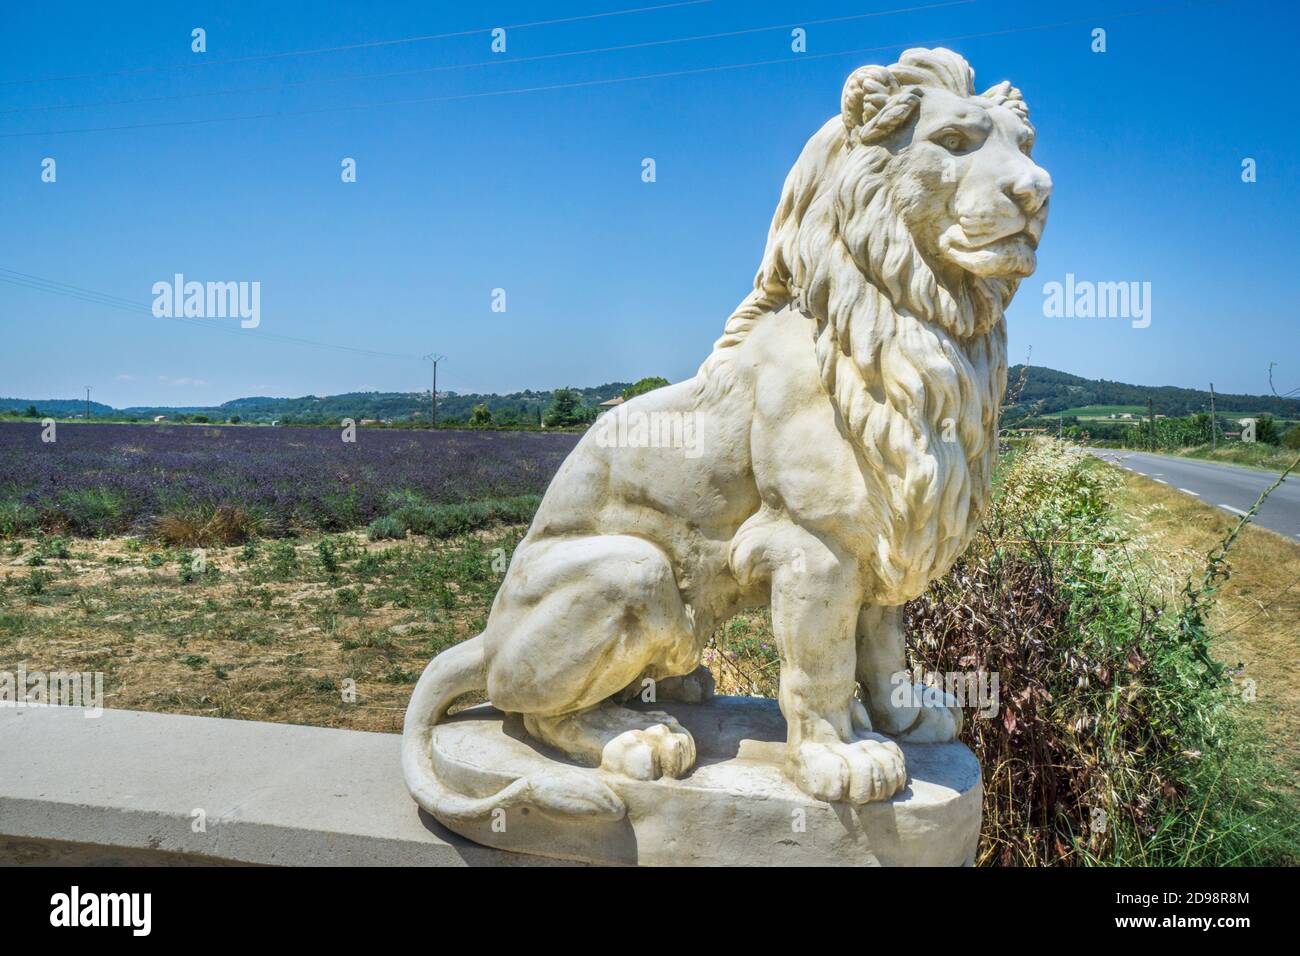 Un lion sculpté garde les champs de lavande du Luberon près de Lacoste, département du Vaucluse, Provence-Alpes-Côte d'Azur, Sud de la France Banque D'Images